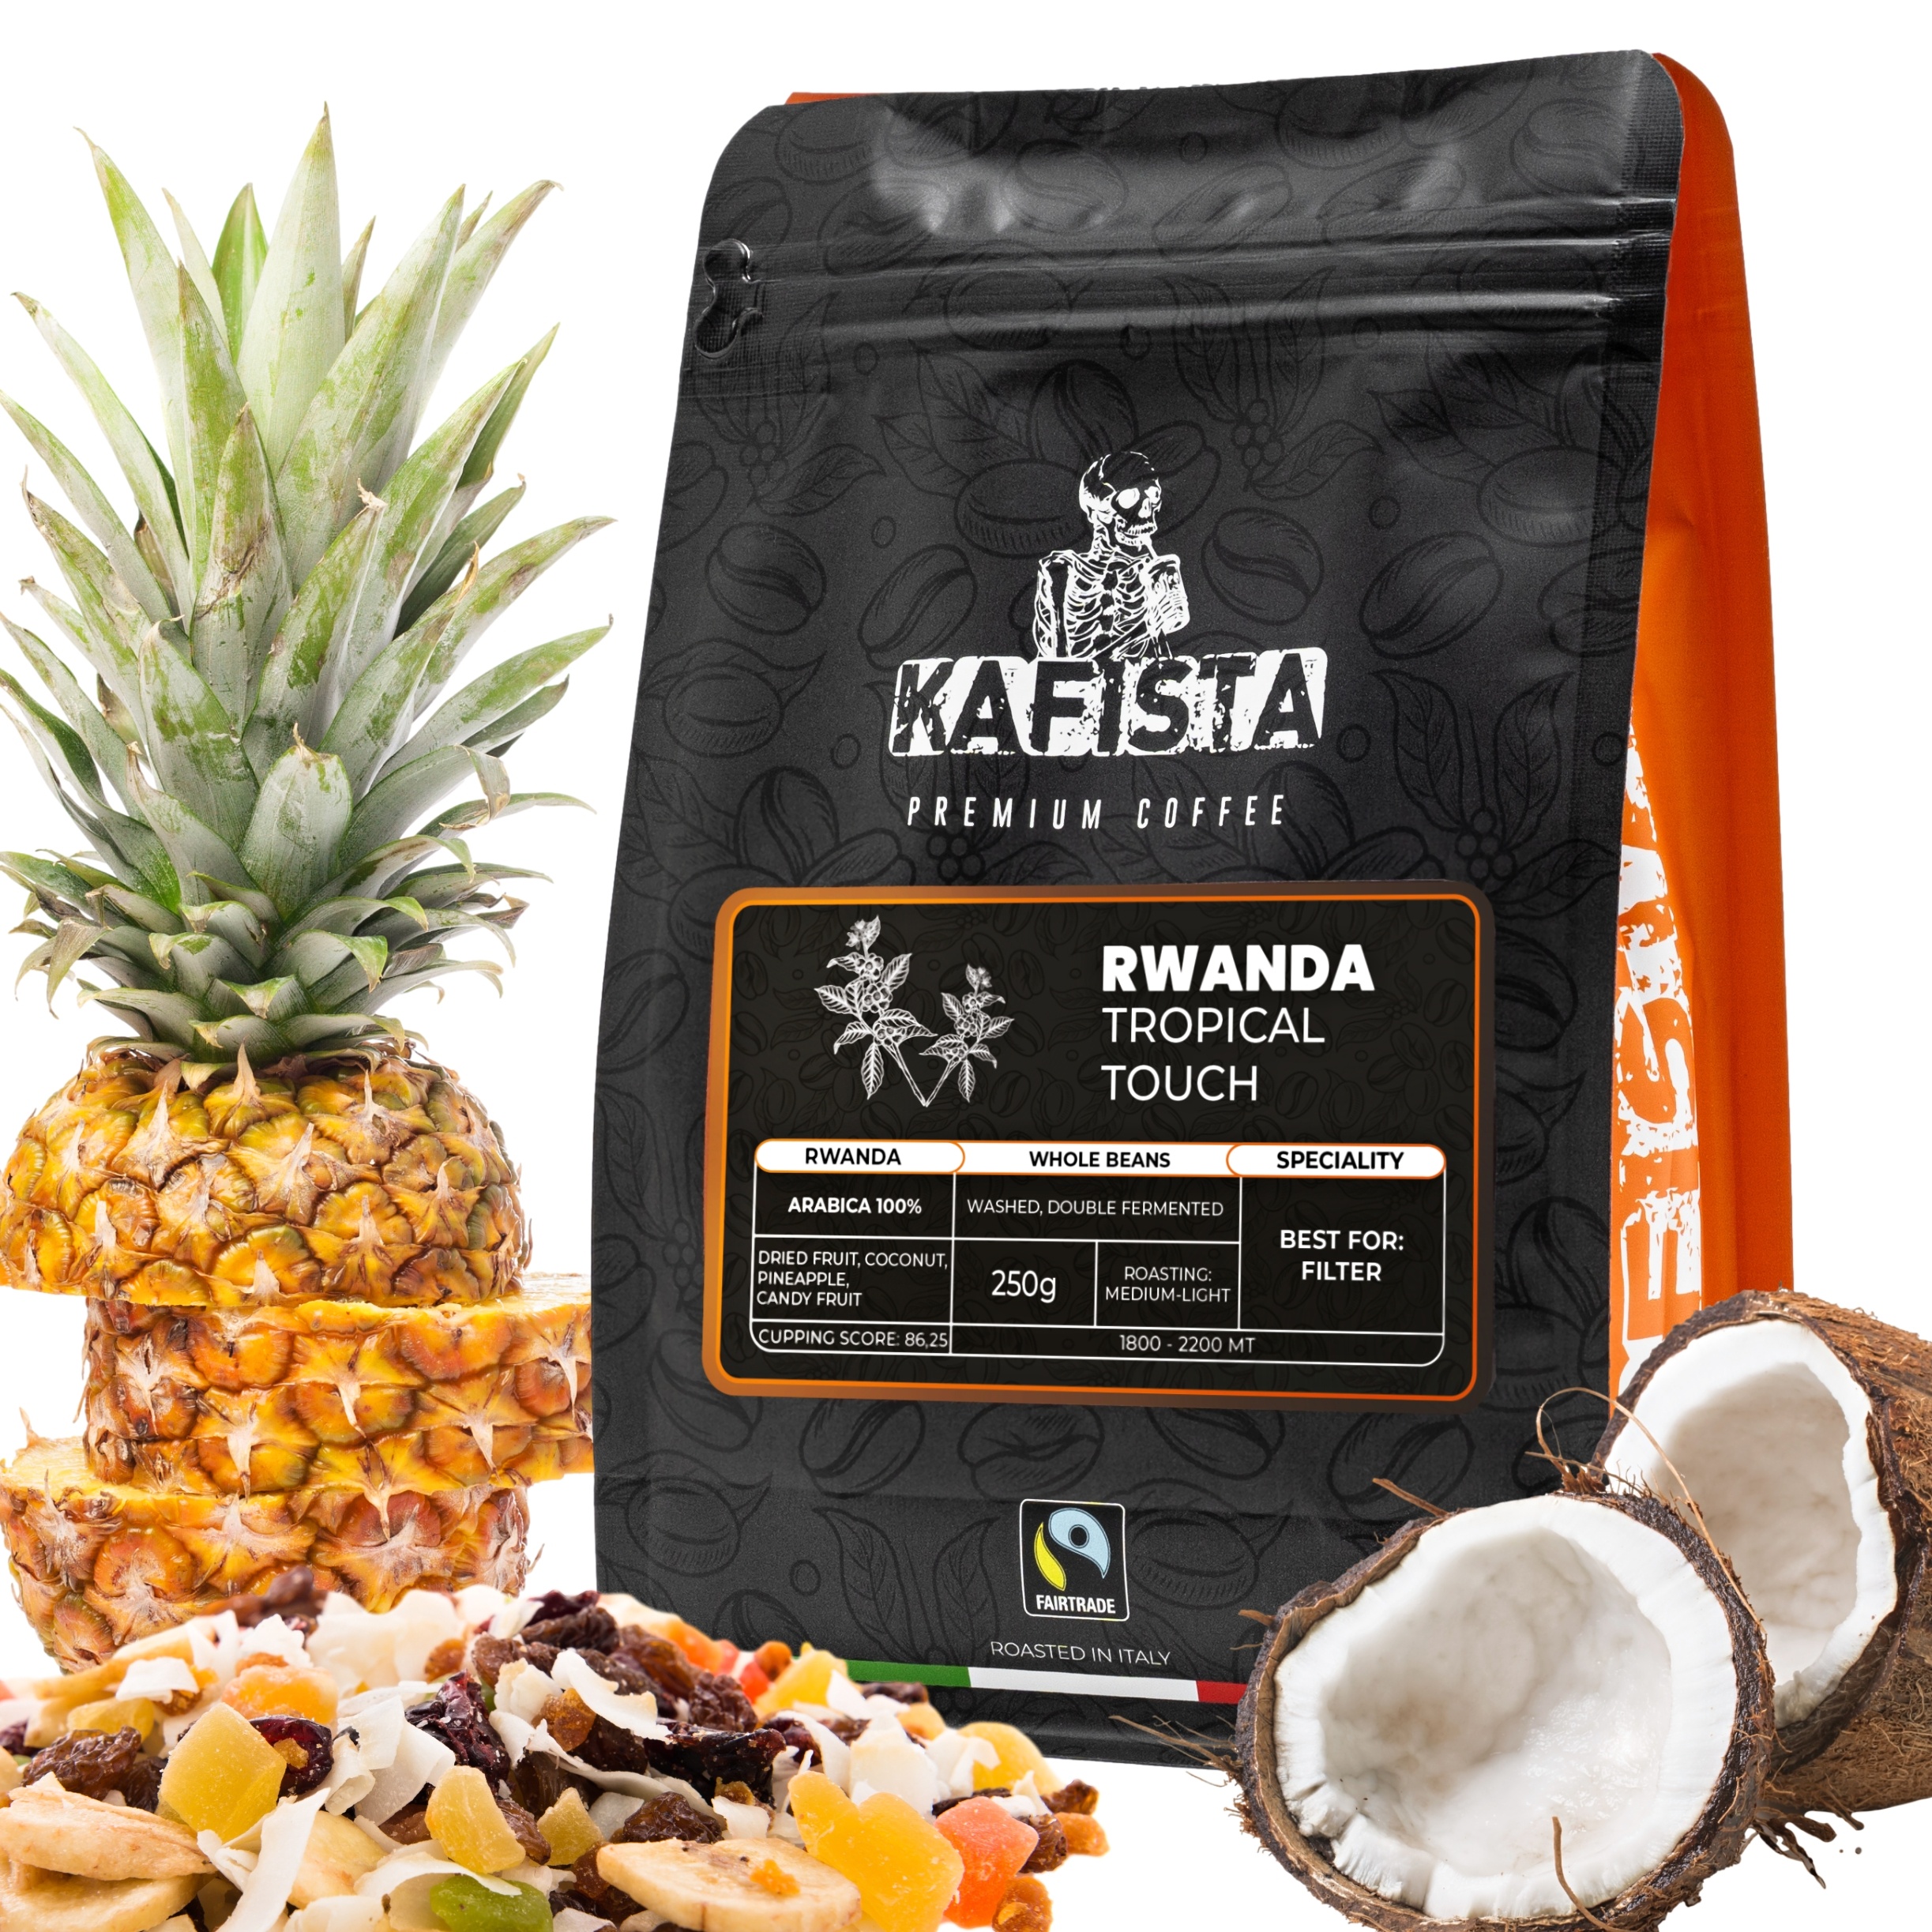 Výběrová káva Kafista "Rwanda Tropical Touch" - 100% Arabica - Zrnková Káva, Pražená v Itálii - ideální pro filtr Množství: 250g